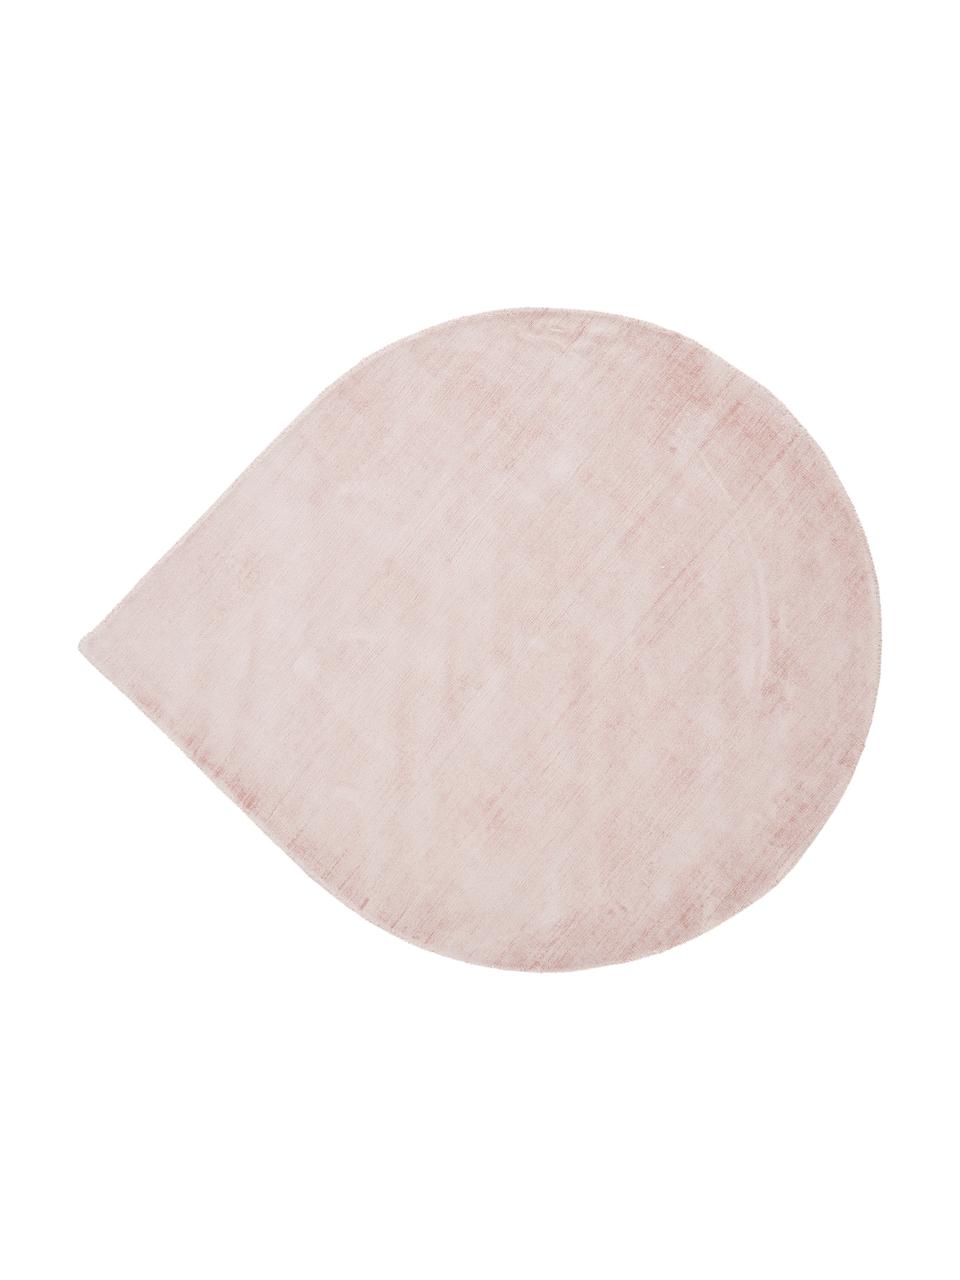 Ručně tkaný viskózový koberec Jane Drop, tvar slzy, Růžová